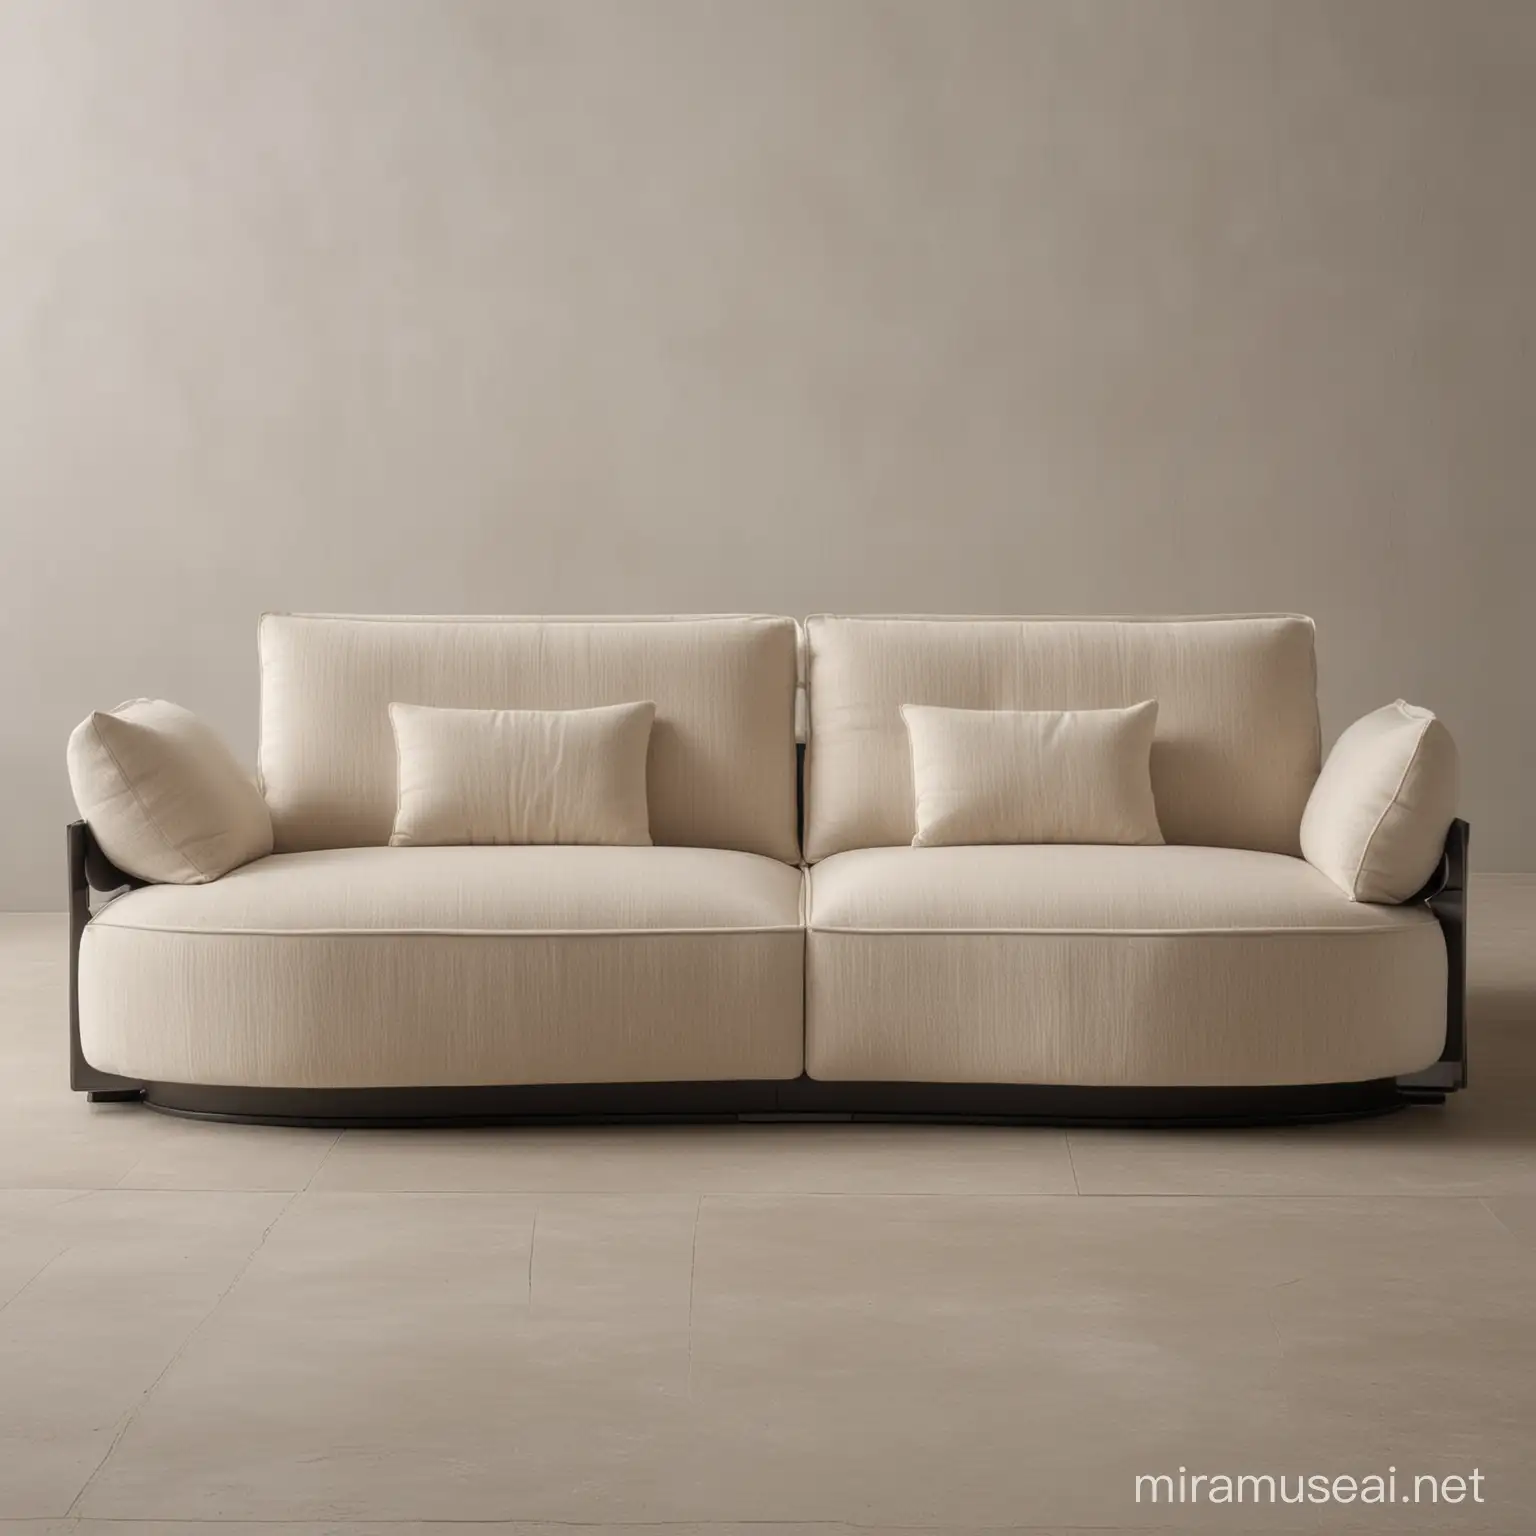 Modern 3Seat Sofa with Modular Design and Italian Fabric